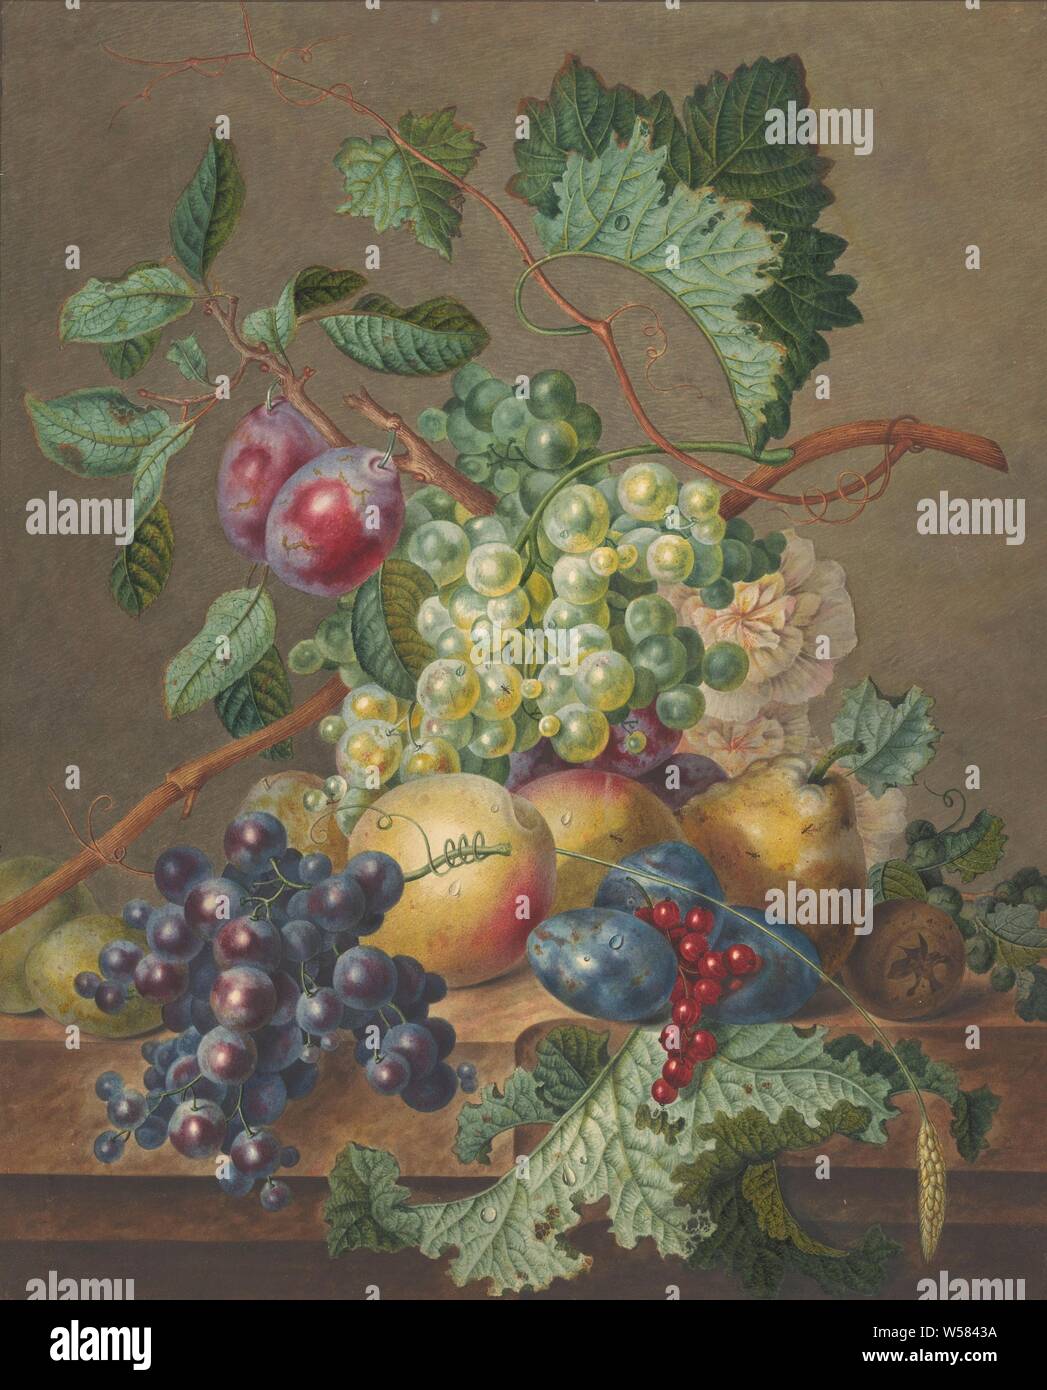 Nature morte avec fruits, toujours la vie des plantes, fleurs et fruits, fruits, Jan de Bruyn, 1700 - 1800, le papier, l'aquarelle (peinture), pinceau, h 439 mm × W 358 mm Banque D'Images